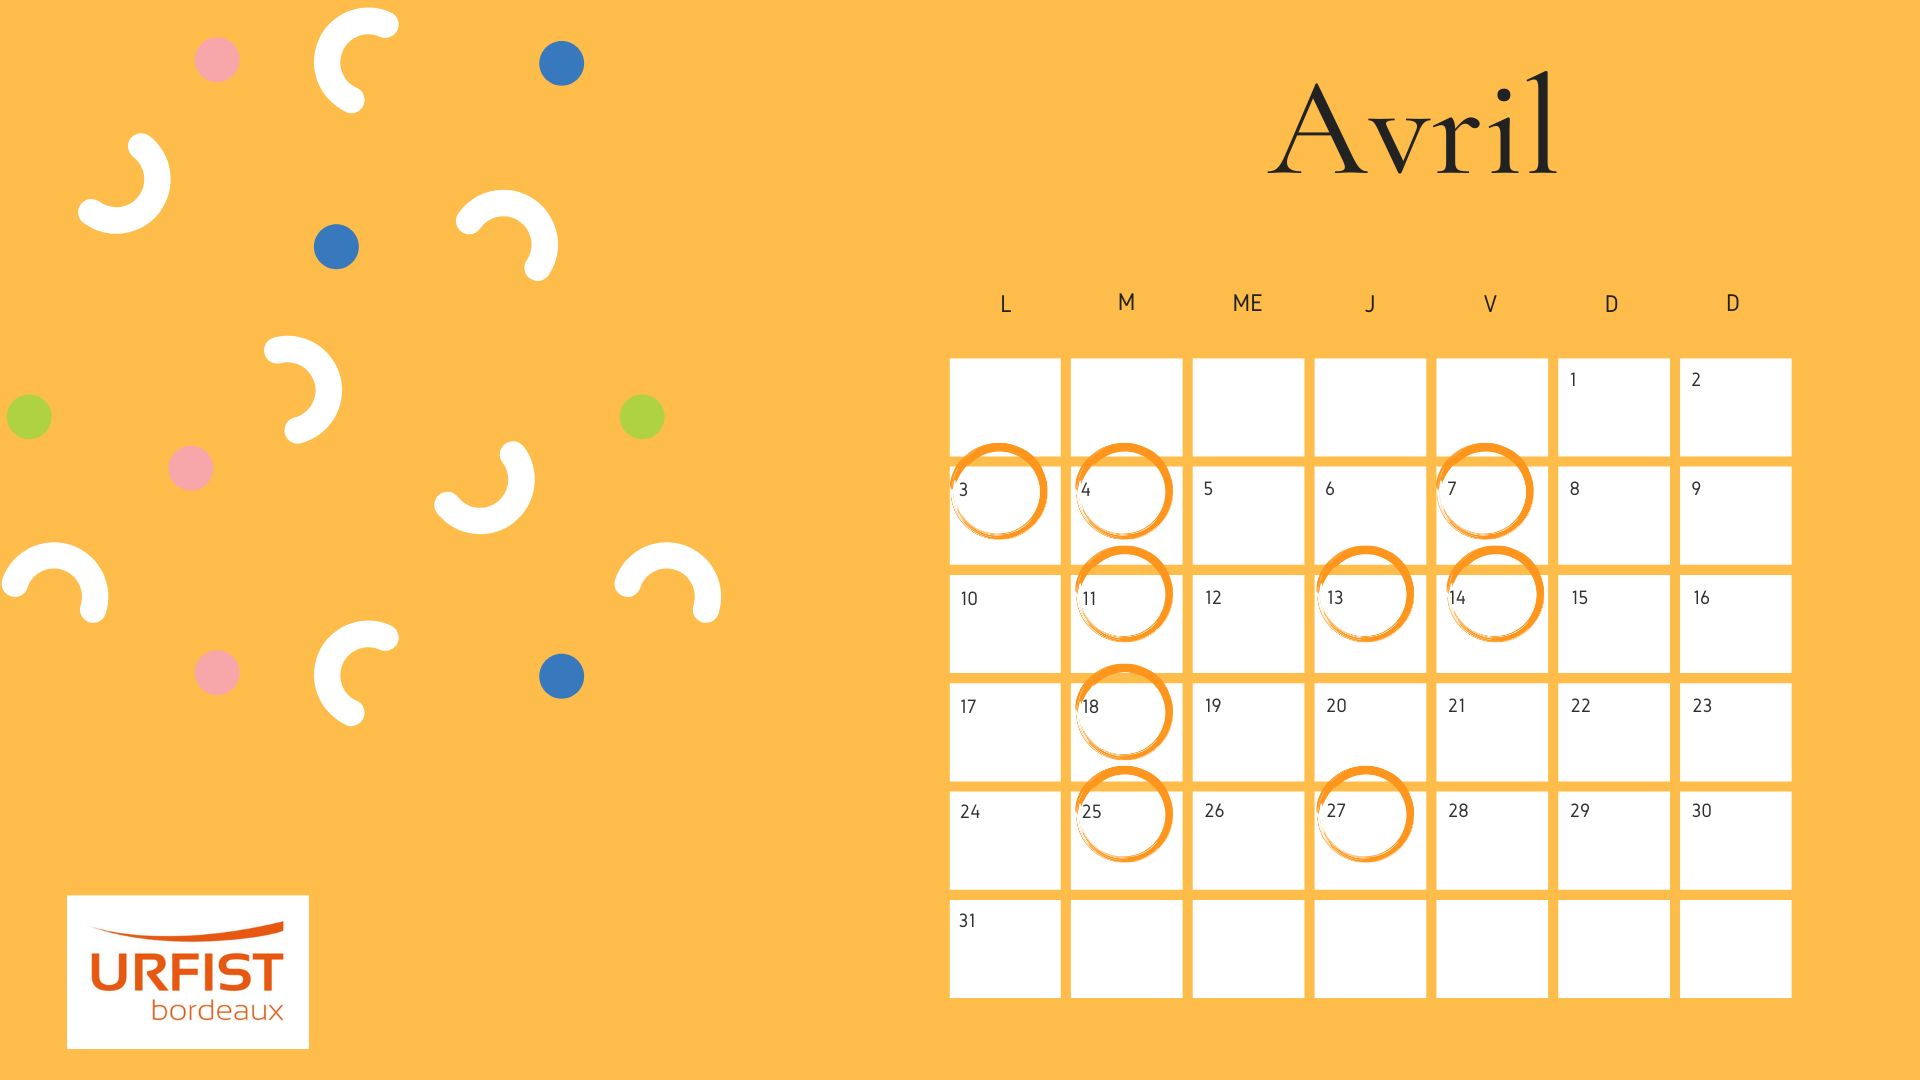 Calendrier du mois d'avril avec les dates des formations entourées.
Jaune-orangé
logo Urfist